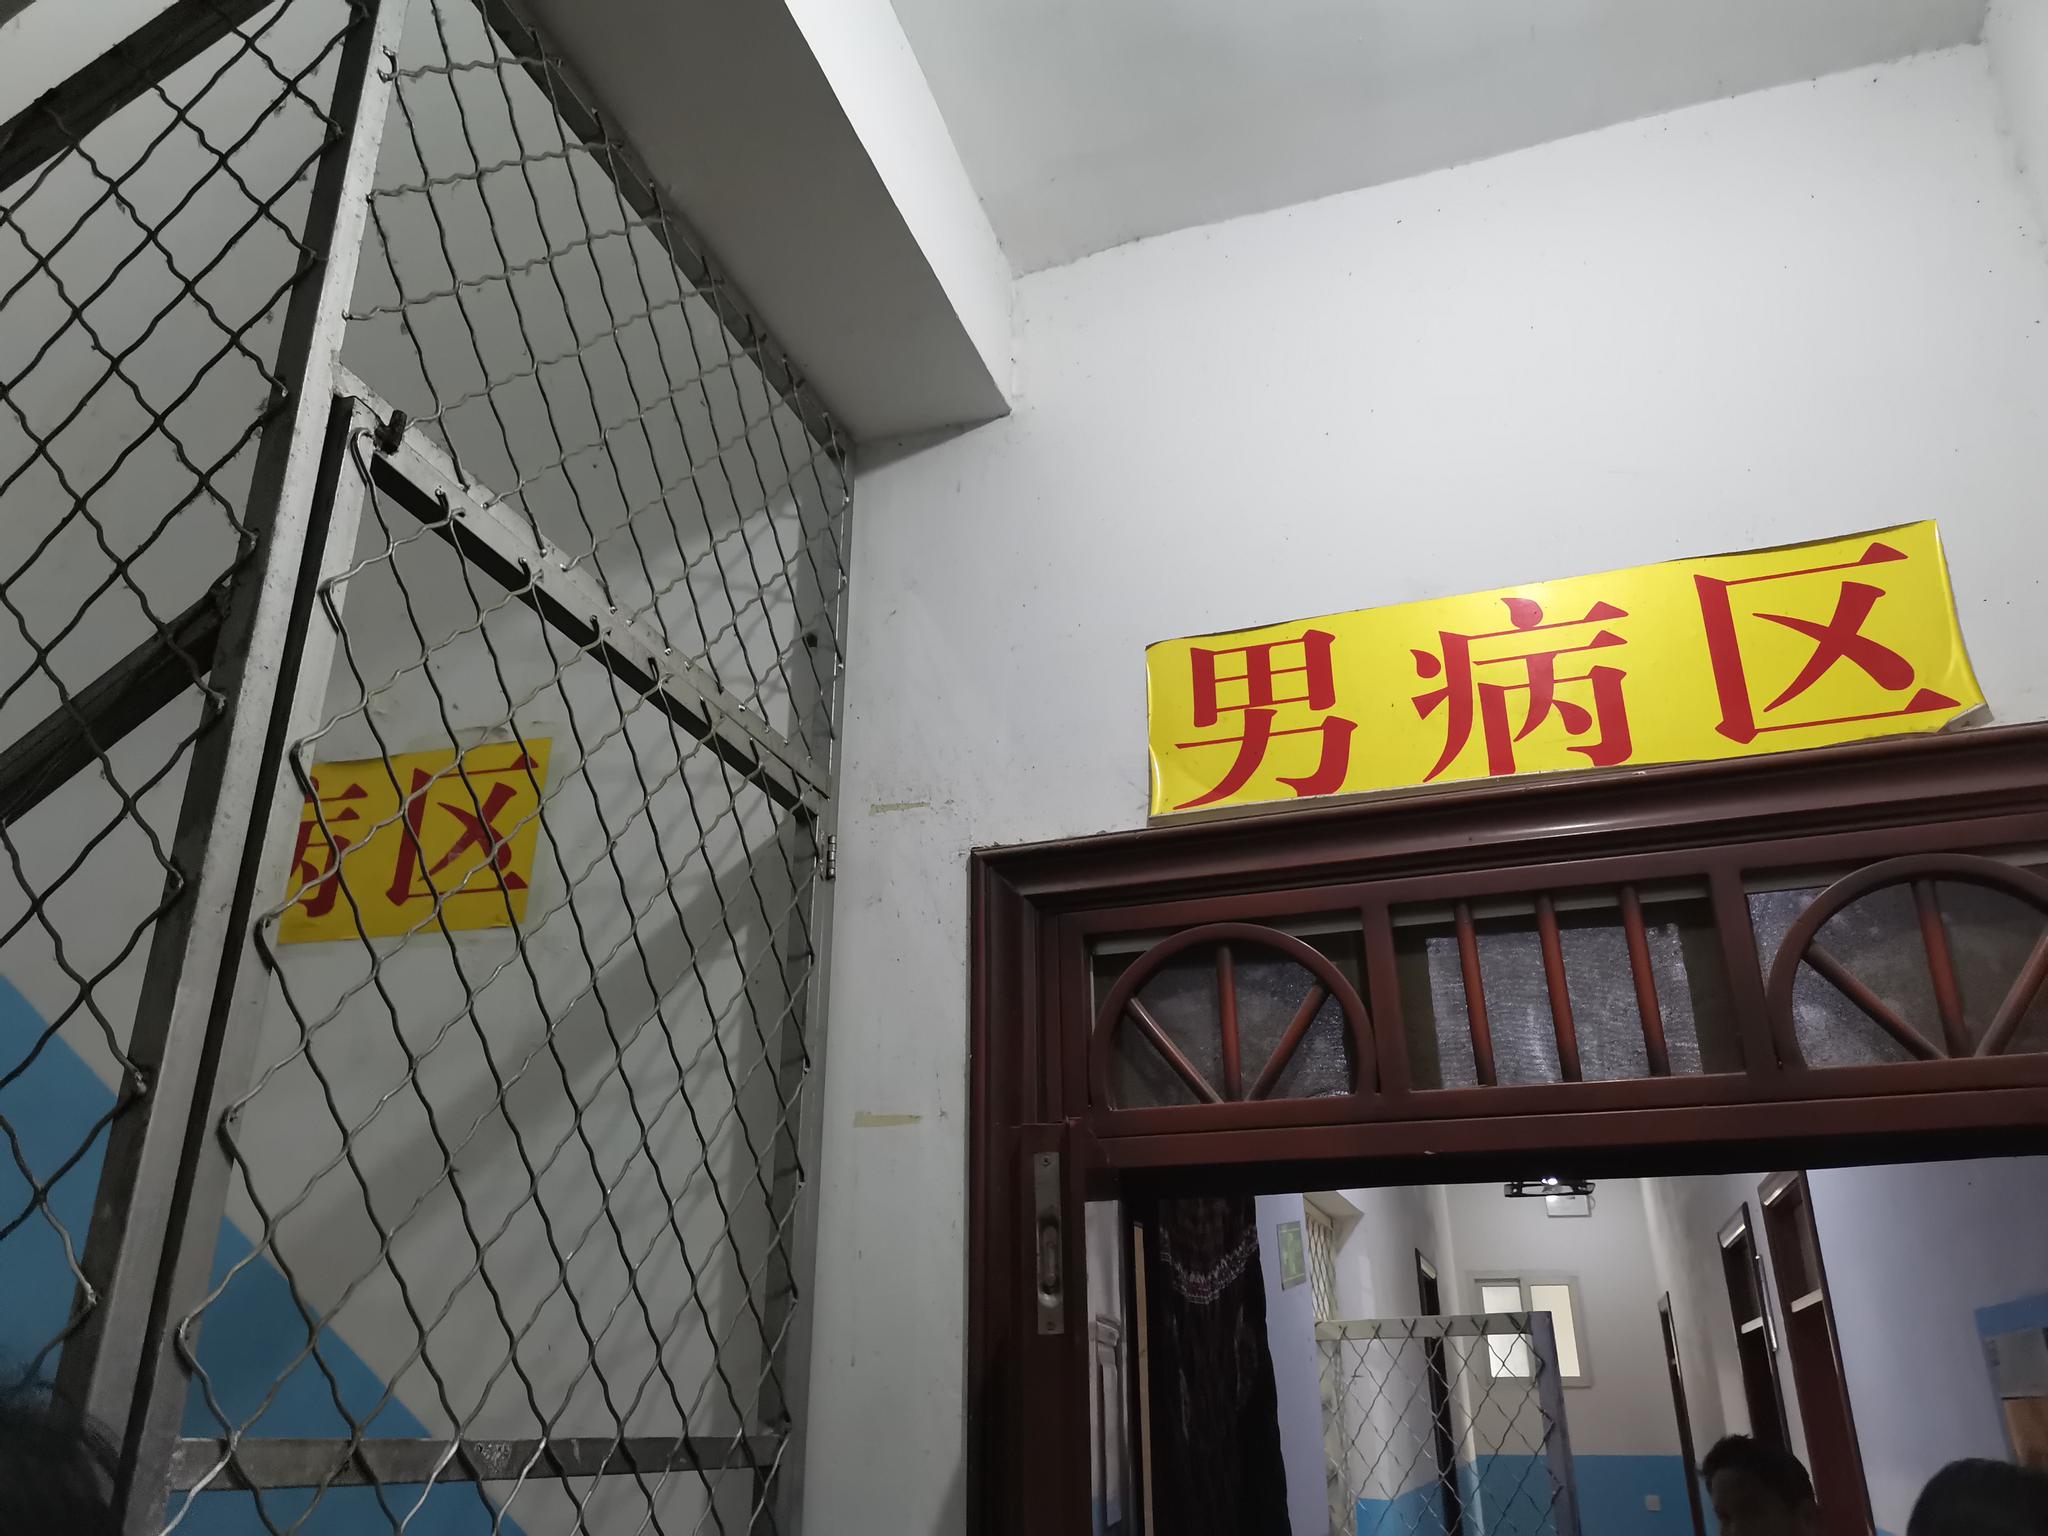 医院二层和三层之间的铁栅栏。新京报记者 刘瑞明 摄